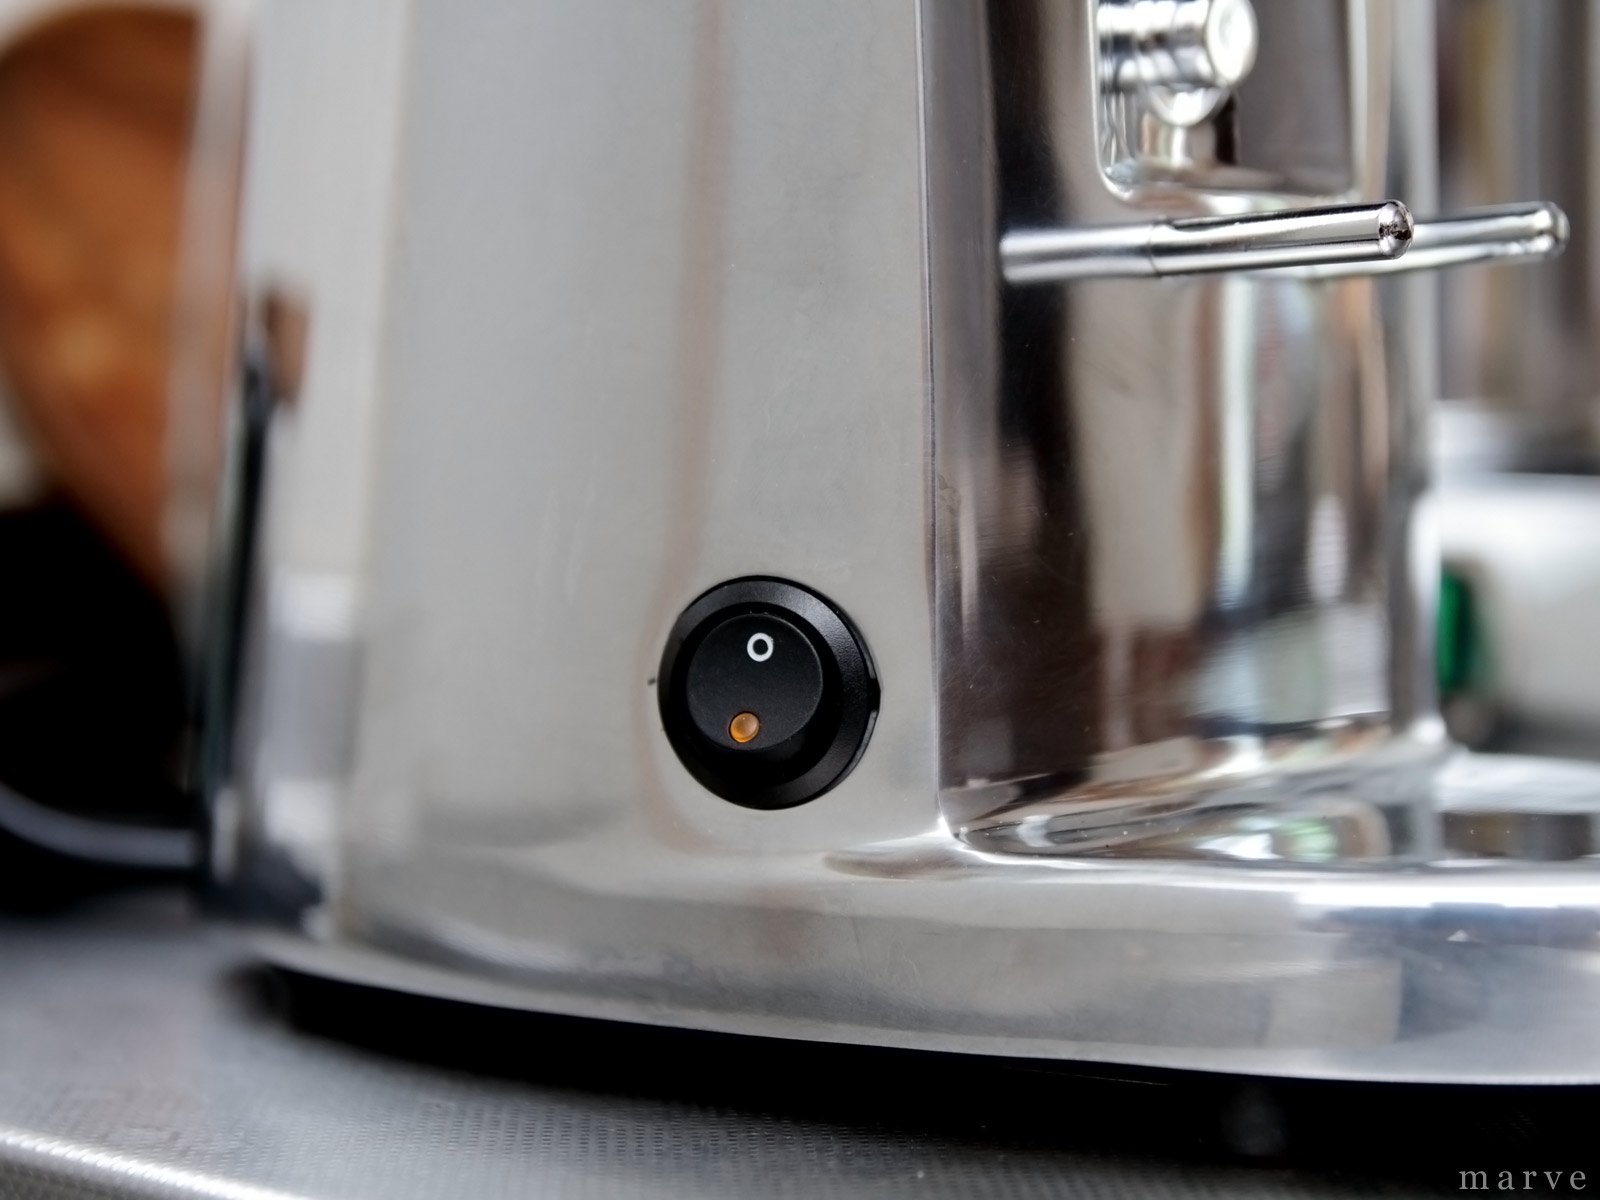 ASCASO（アスカソ）エスプレッソ用グラインダー　i-mini ポリッシュ - mp COFFee GEAR ONLINE SHOP  （エムピーコーヒーギア）コーヒーツールの専門ショップ